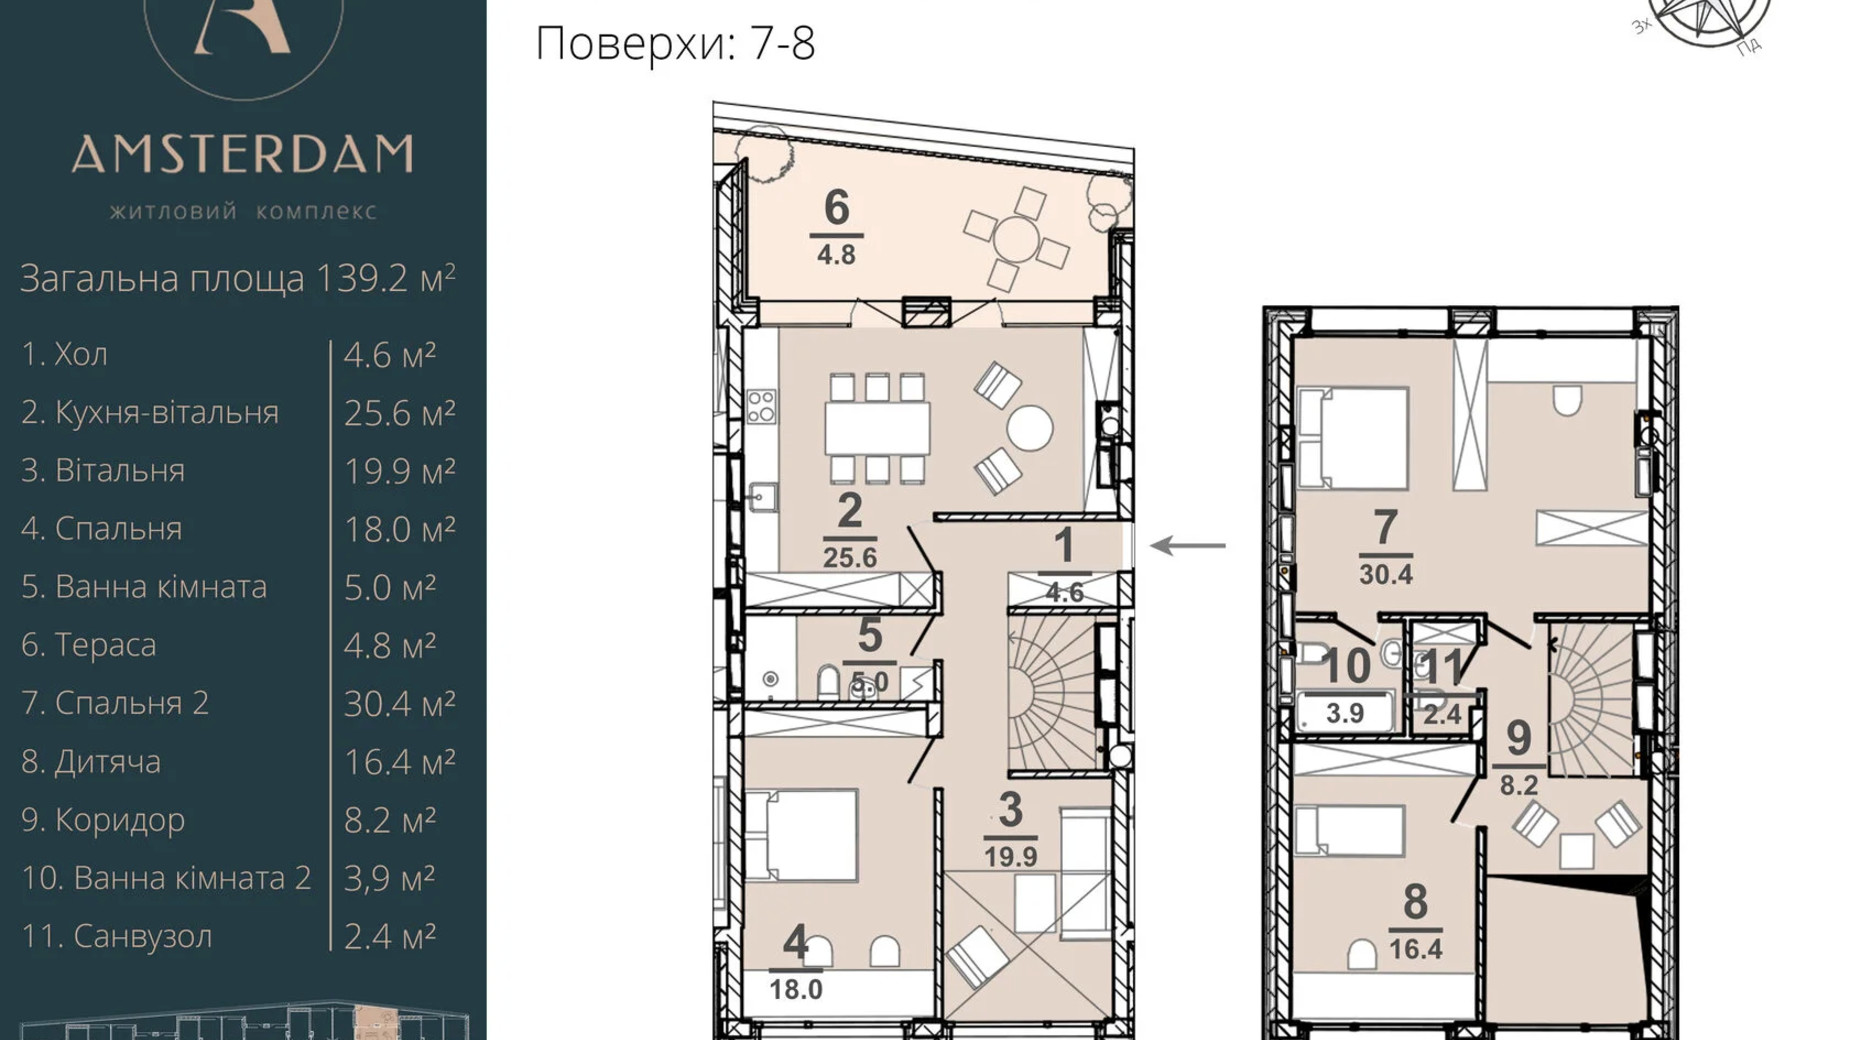 Планировка много­уровневой квартиры в ЖК Amsterdam 139.2 м², фото 337383